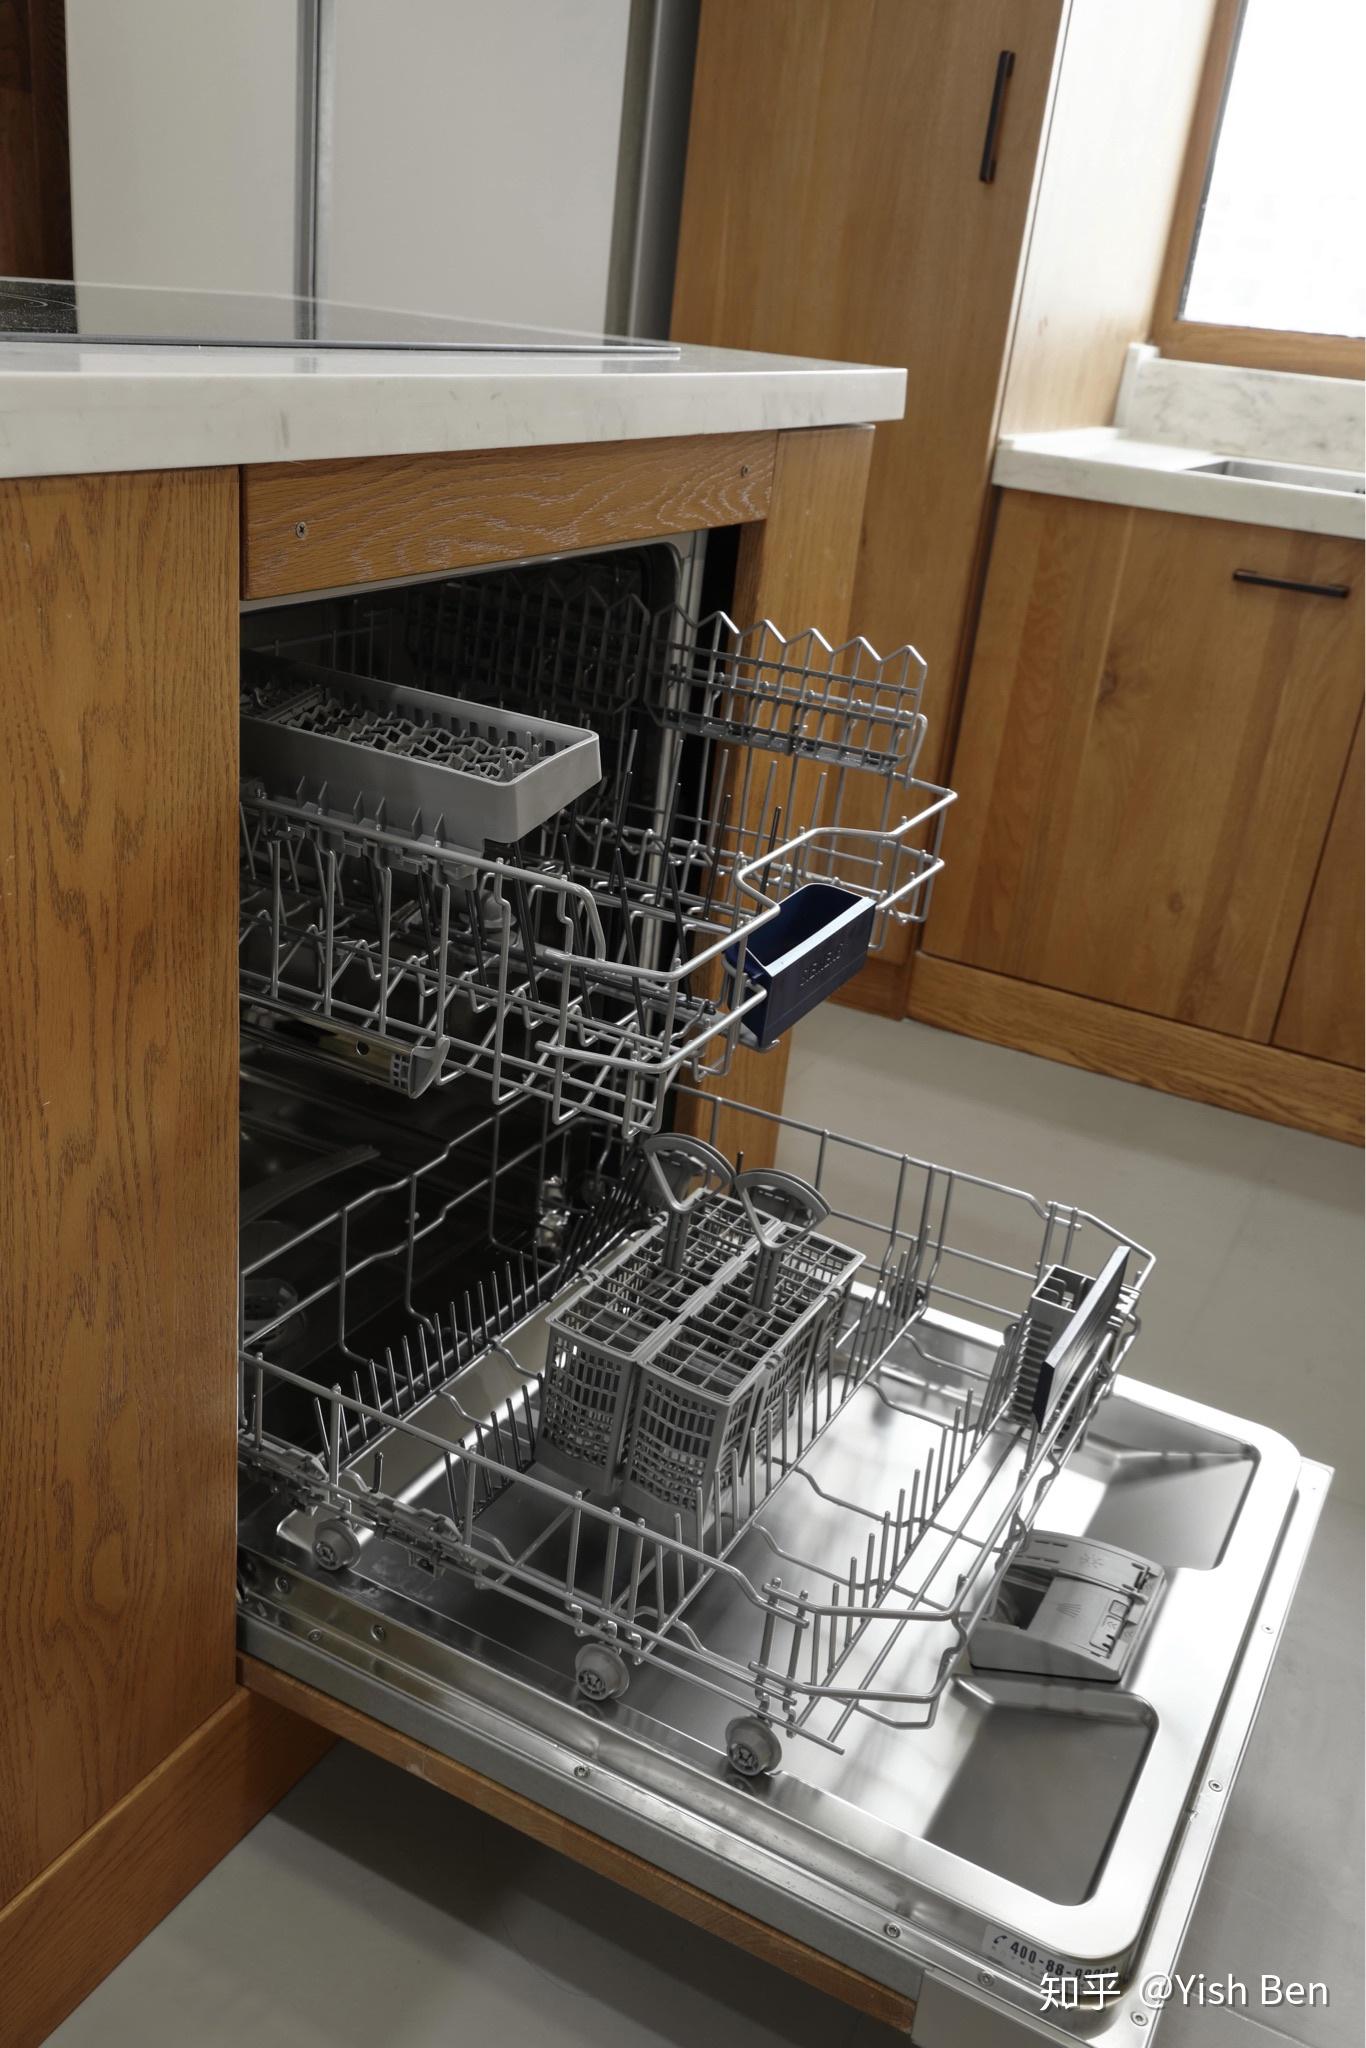 嵌入式洗碗机可以独立放在外面，当做台式使用吗？ - 知乎